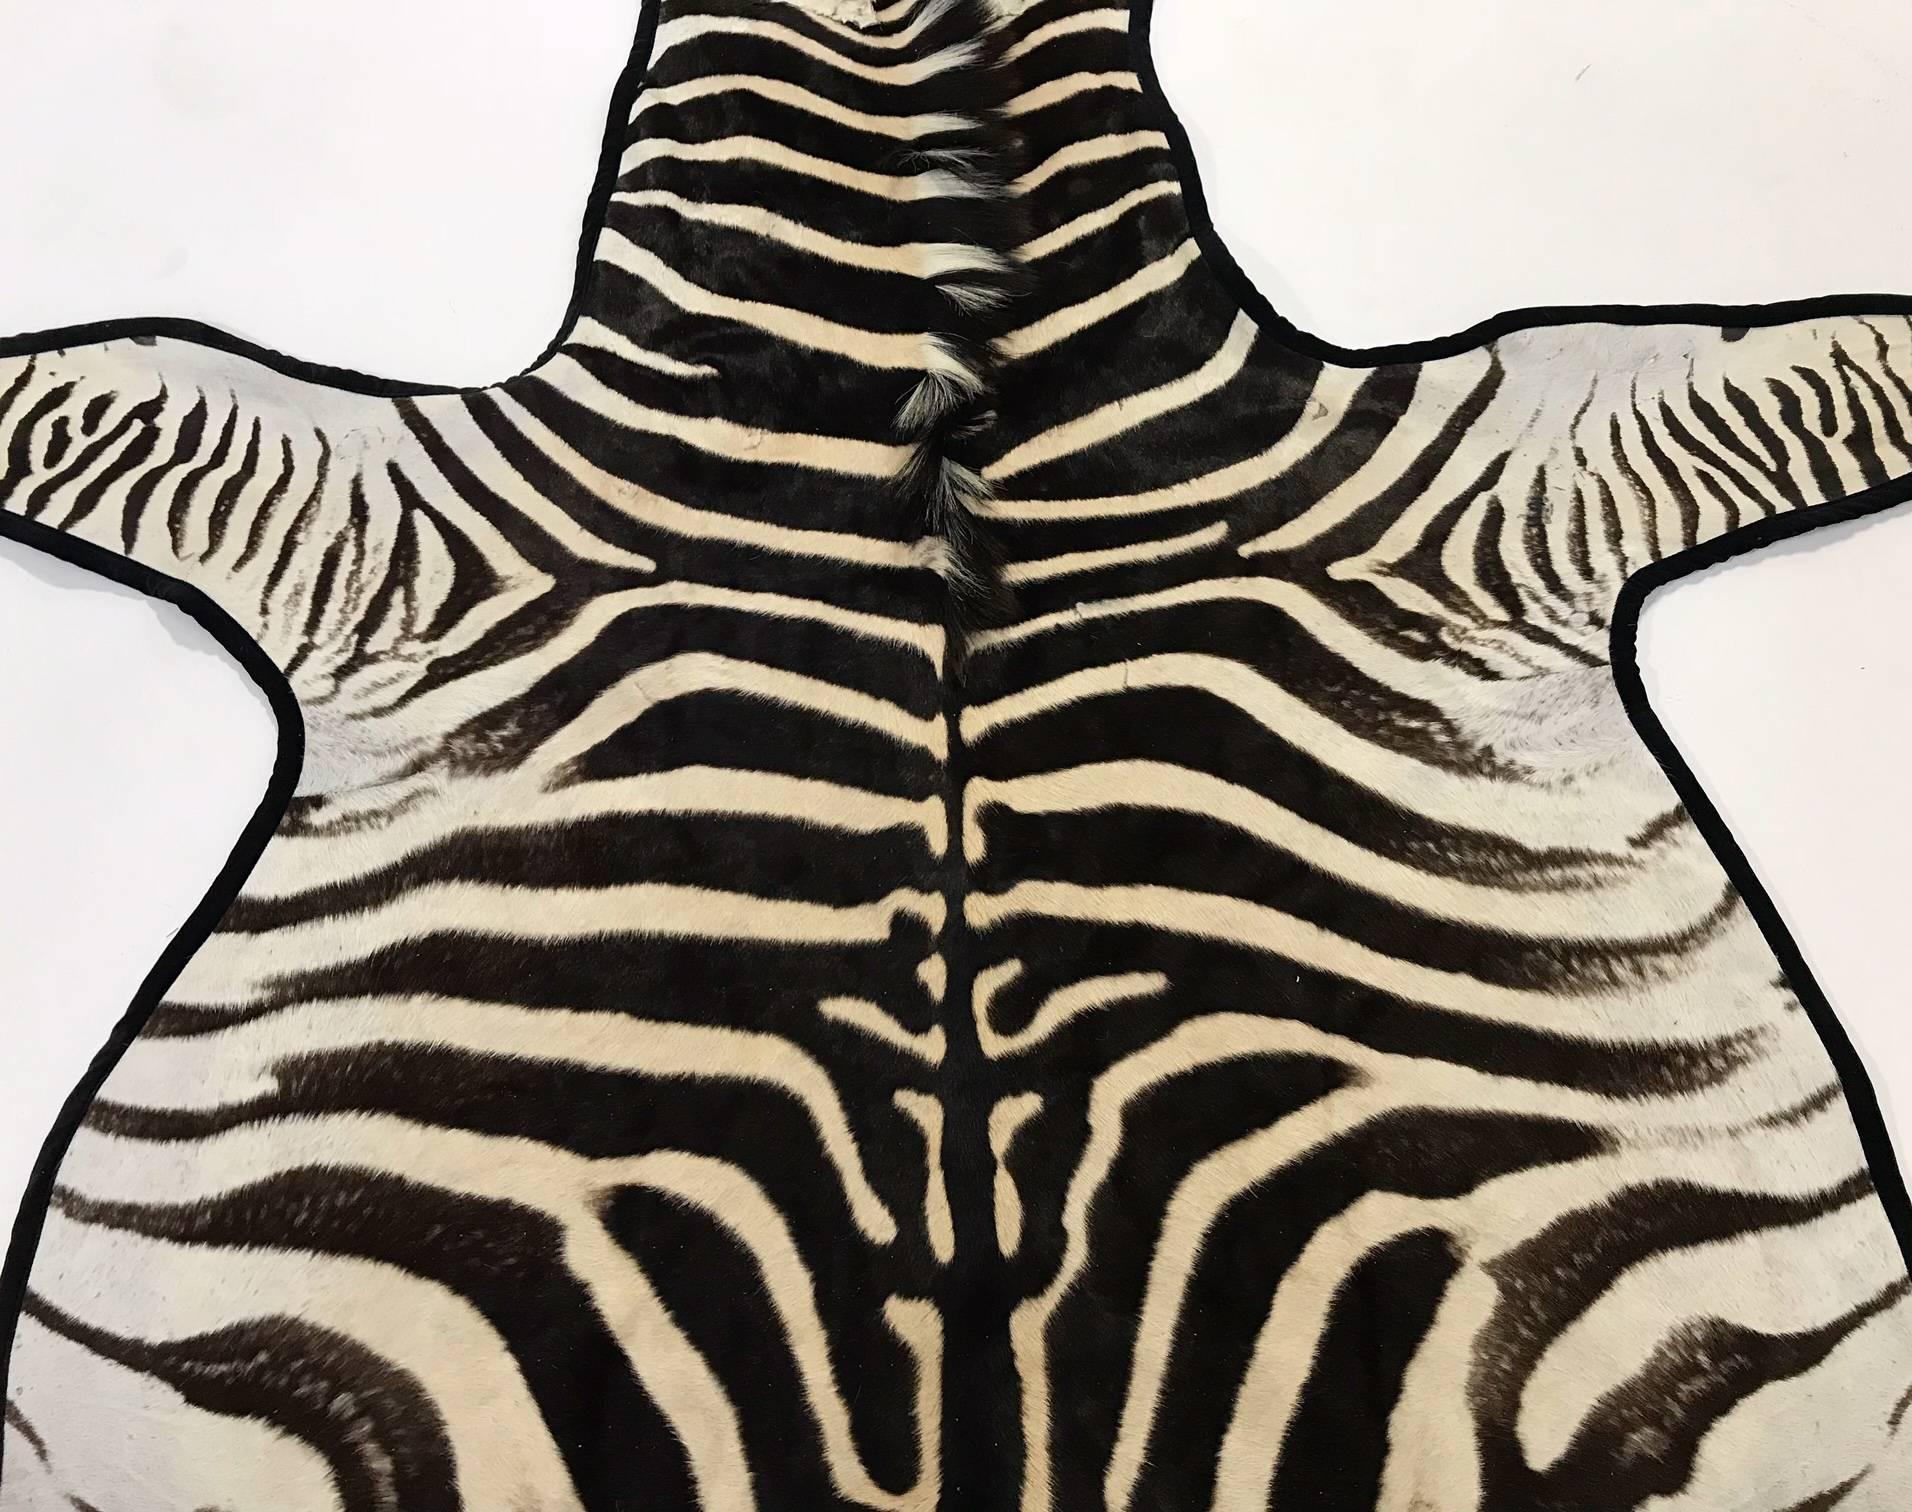 Die Polstermeister von Forsyth haben dieses handverlesene Zebrafell mit unserem luxuriösen Samt bezogen und mit unserem khakifarbenen Baumwollgewebe unterlegt. Wir lieben die Eleganz, die das Leder dem Teppich verleiht. 

Die Zebrafelle von